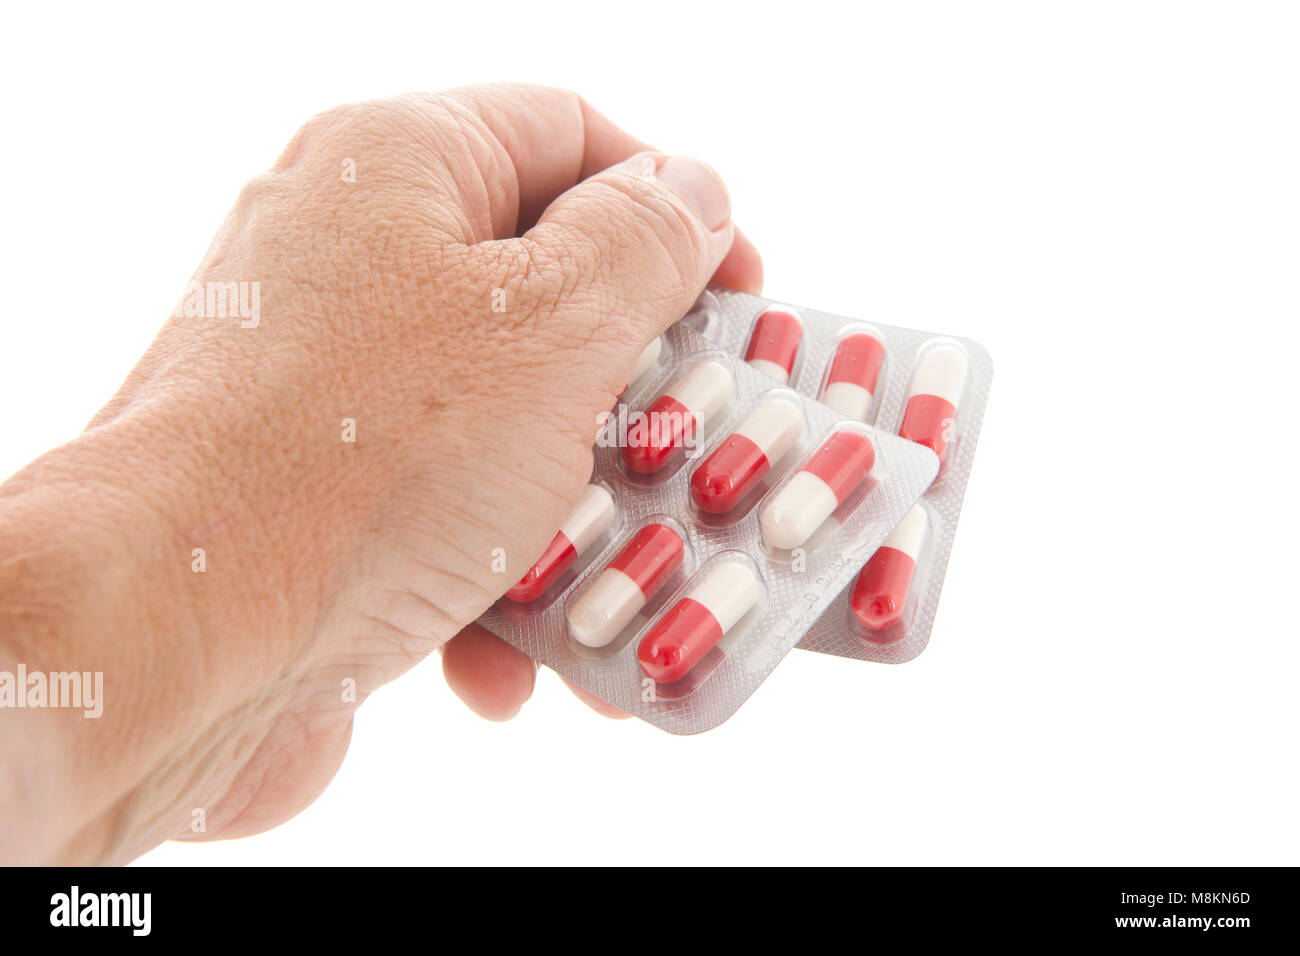 Die Verpackung der Tabletten. Kapseln in Rot und Weiß in der Alten Hand  Stockfotografie - Alamy